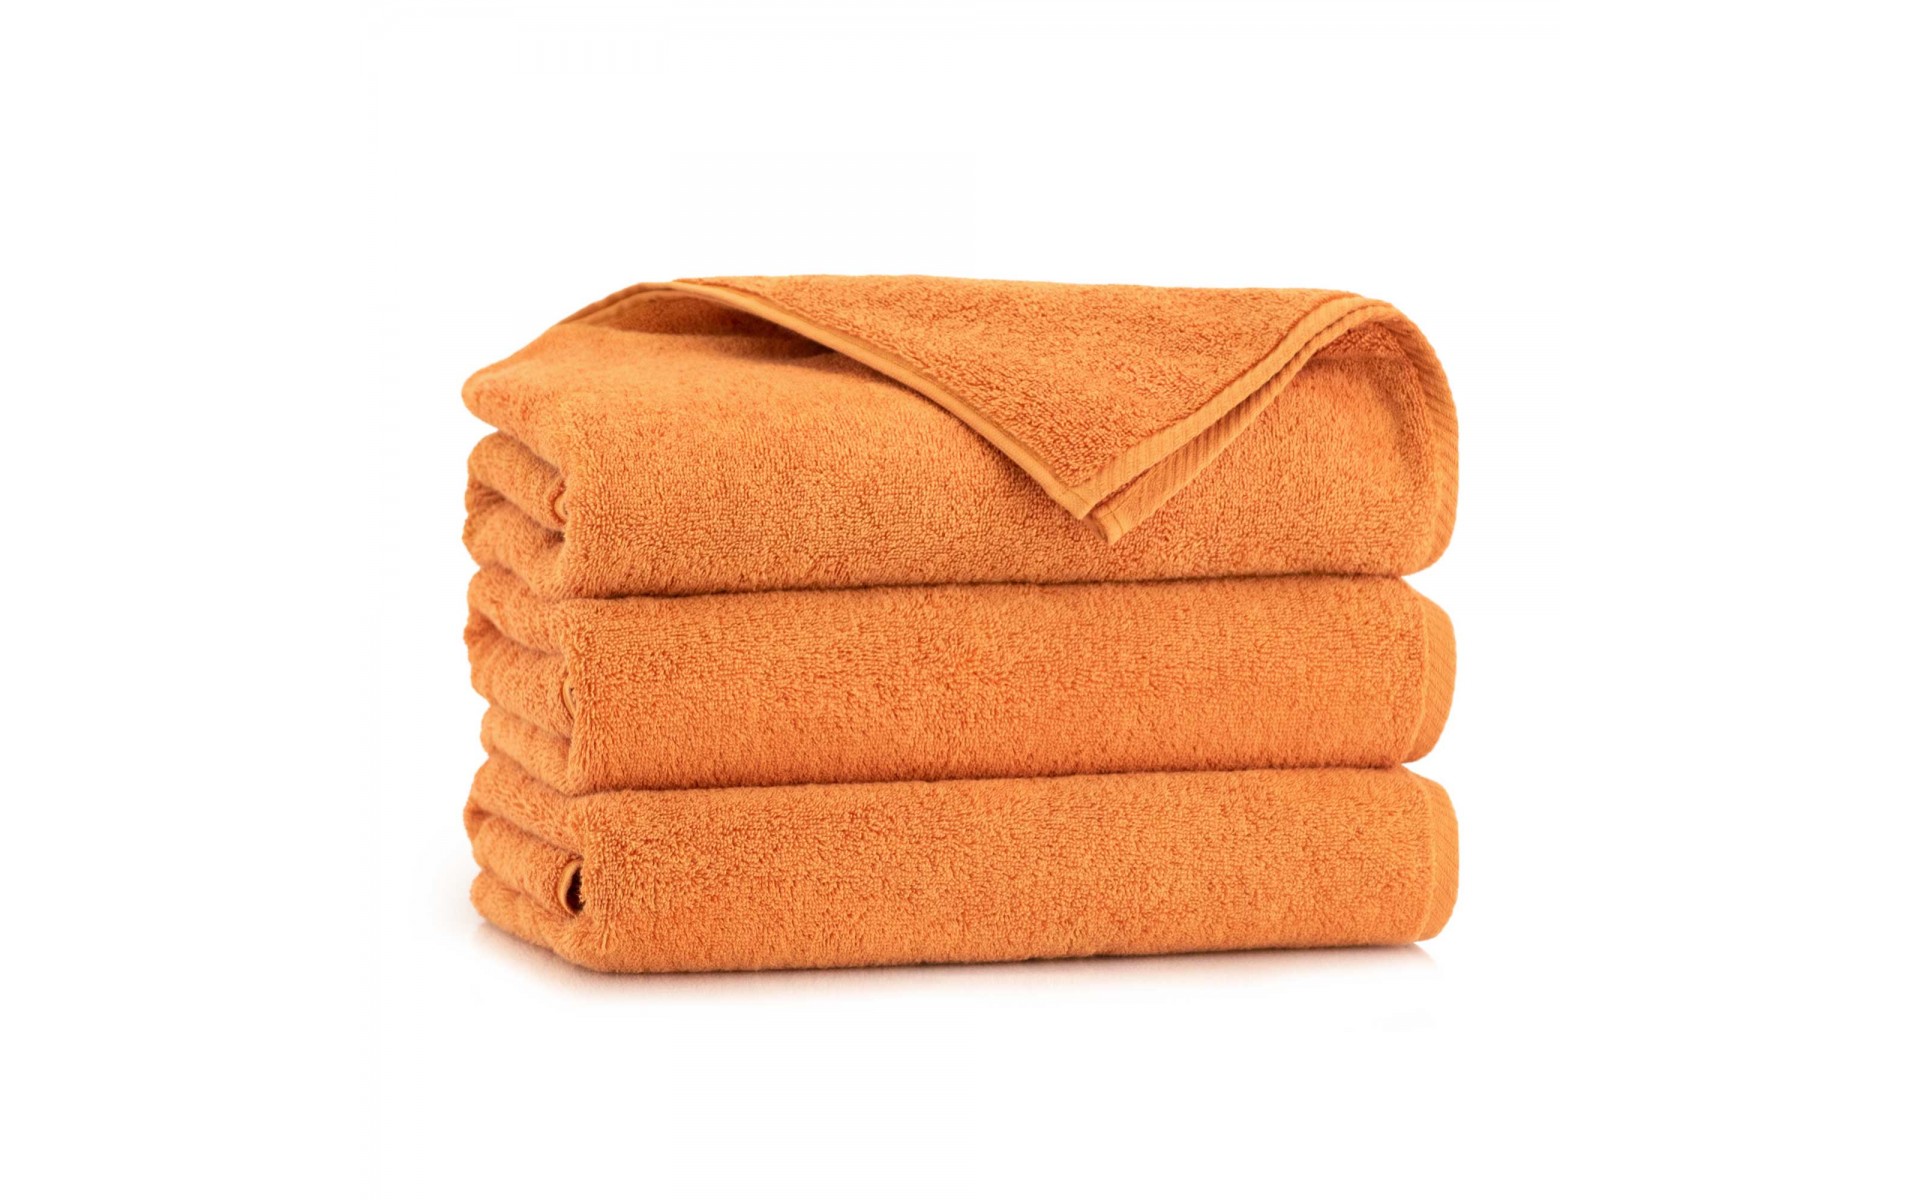 ręcznik KIWI 2 pomarańczowy-pm - 10010